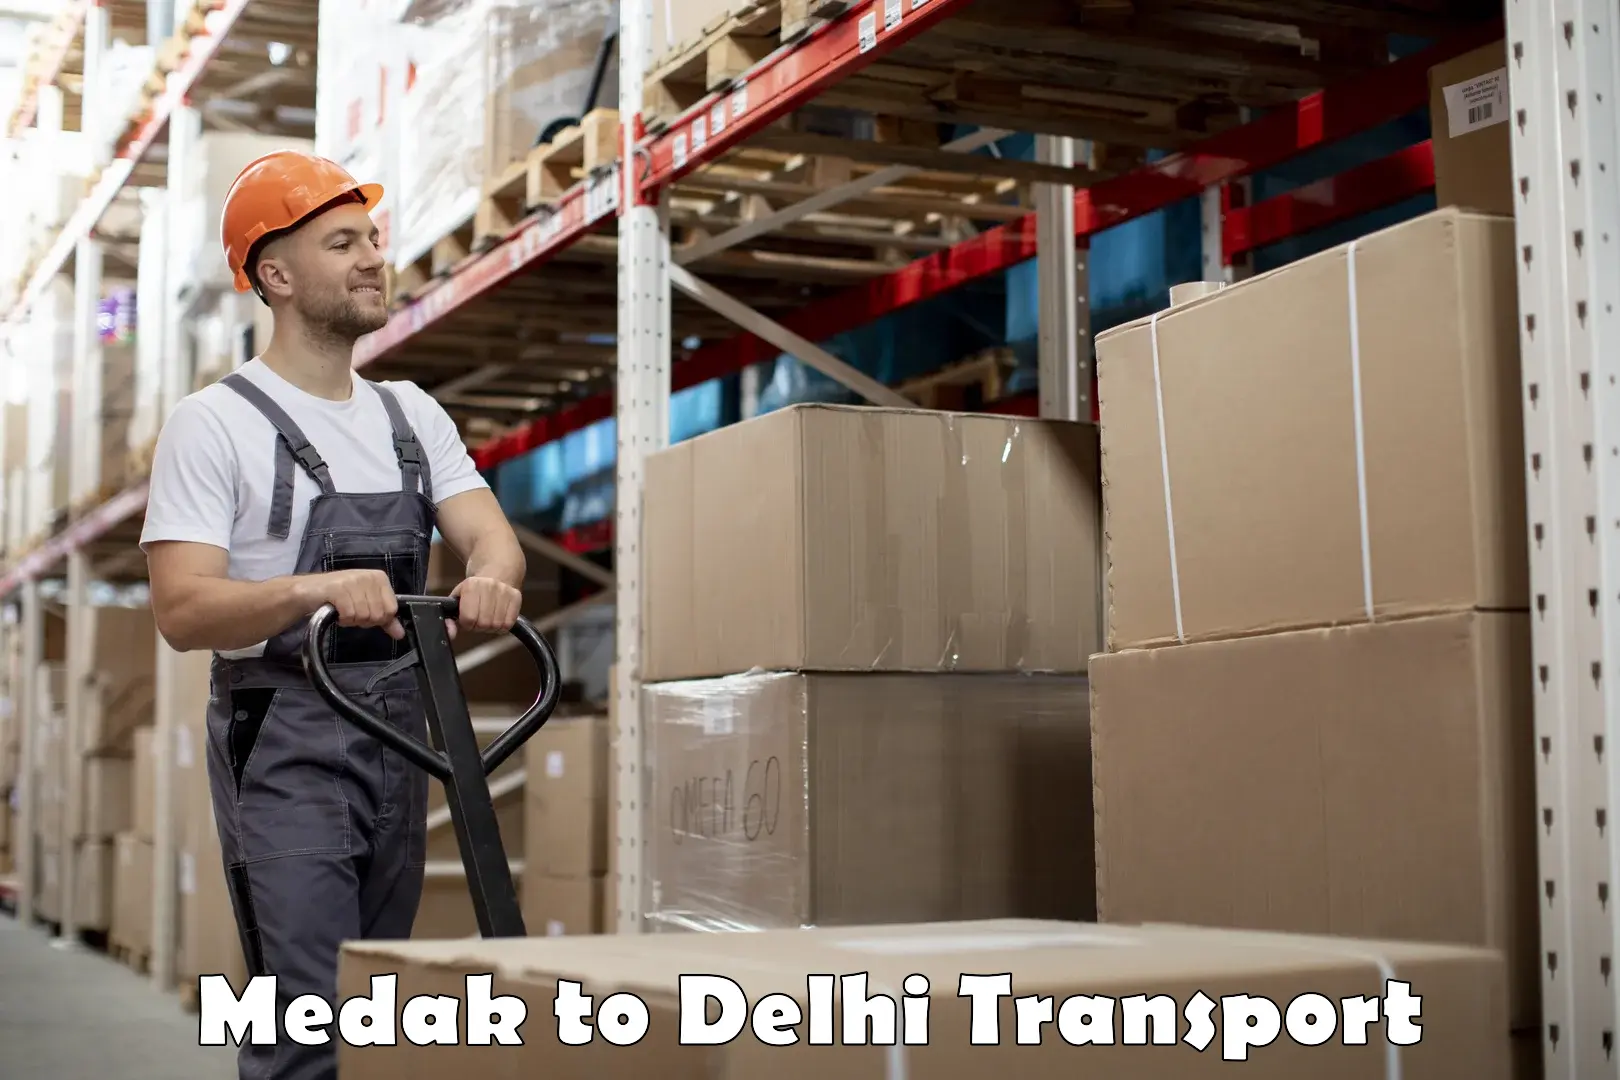 Furniture transport service Medak to Sansad Marg